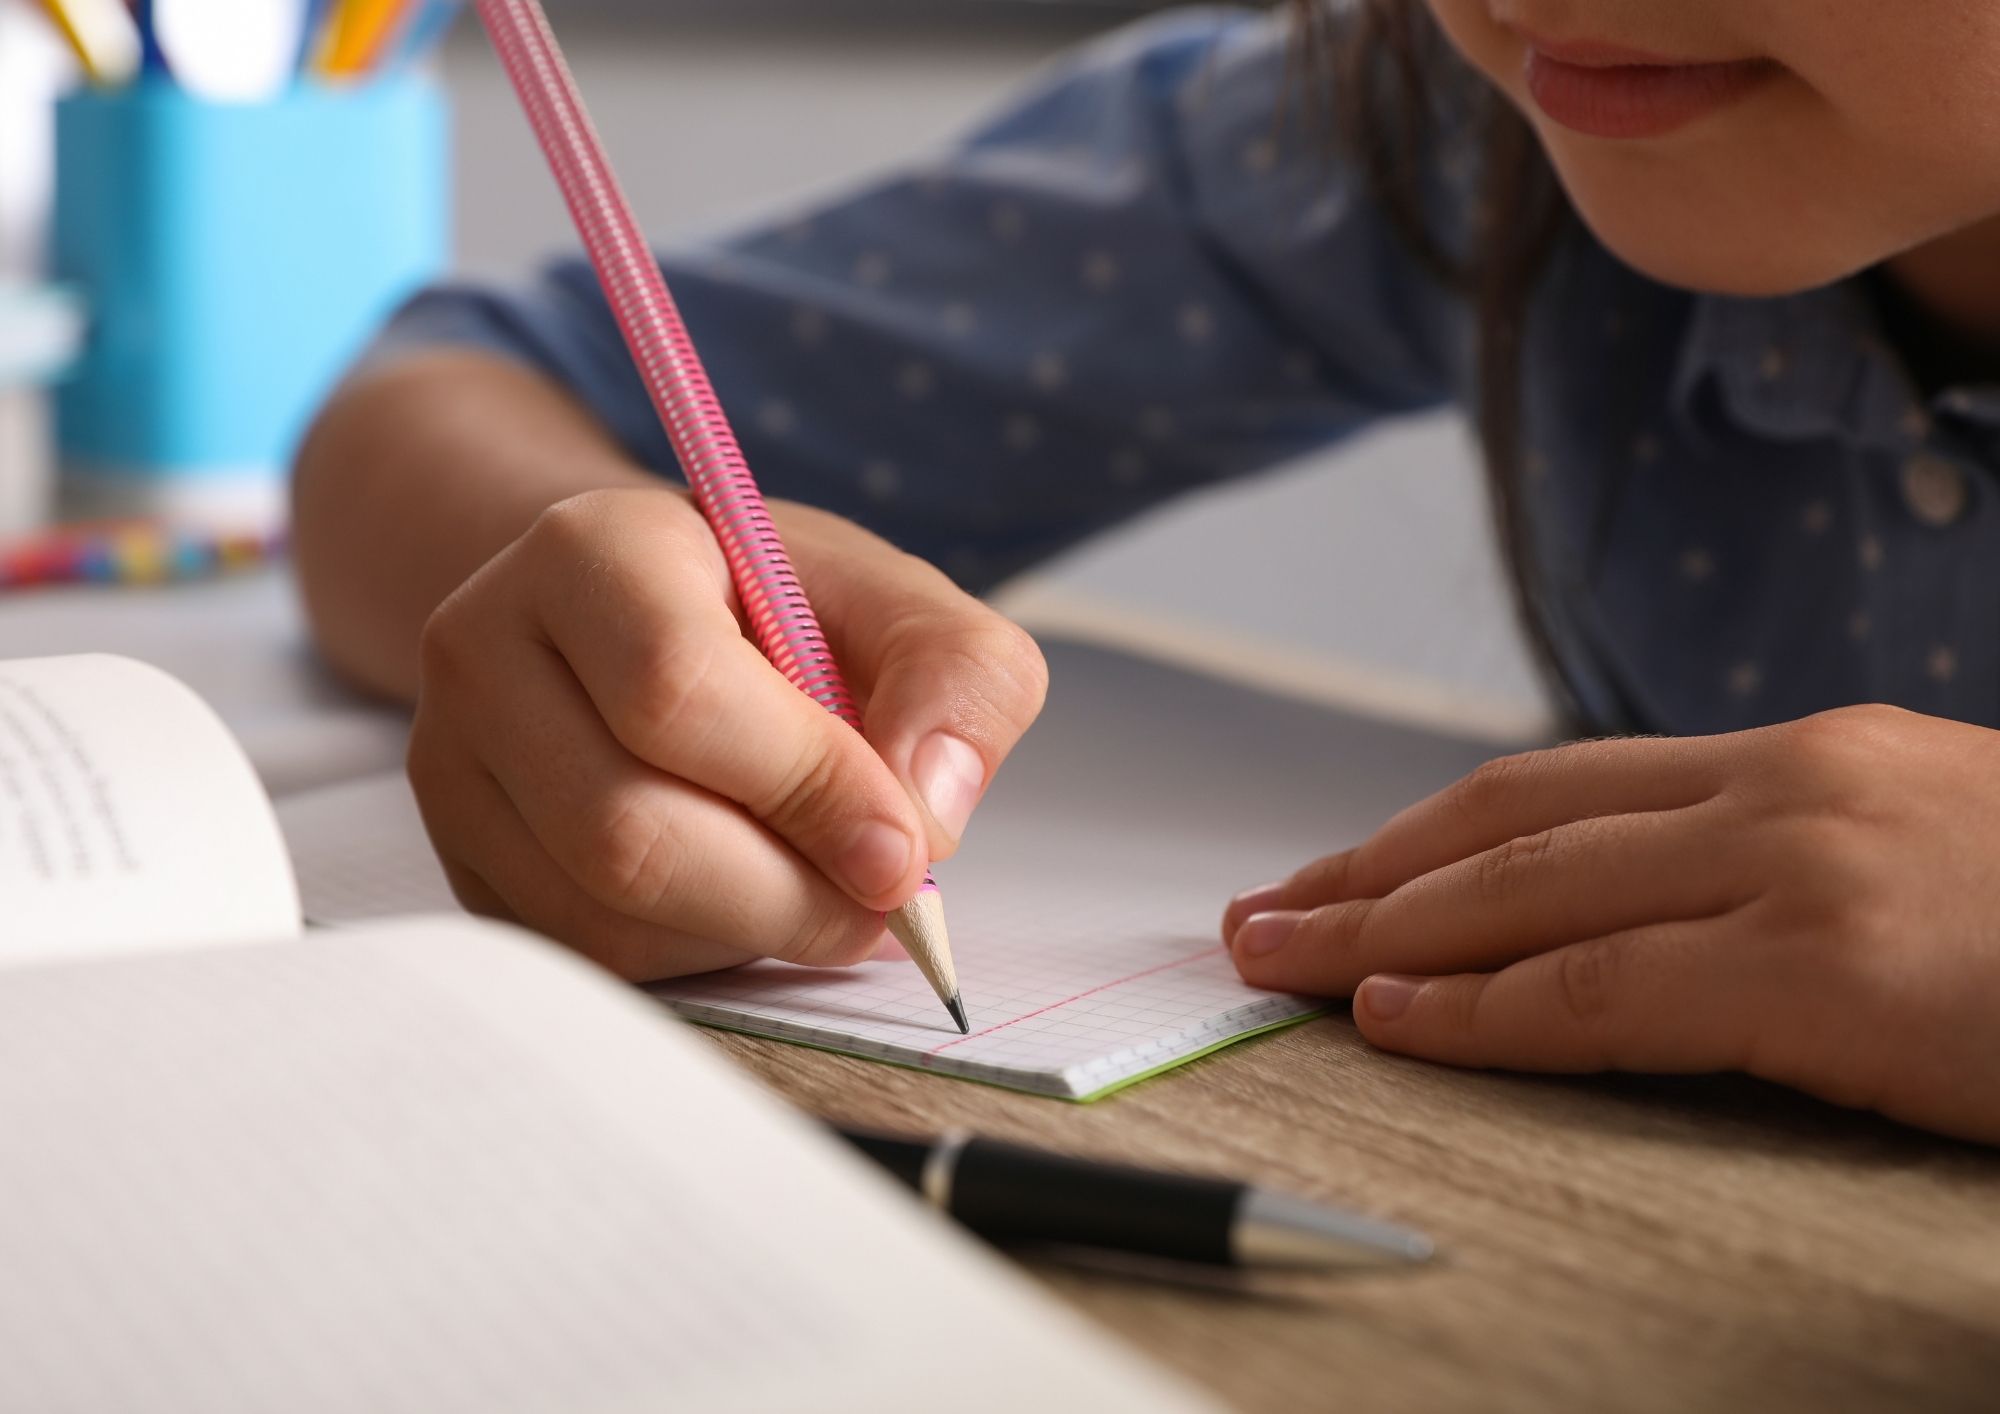 Apprendre à écrire: crayon, clavier ou les deux?